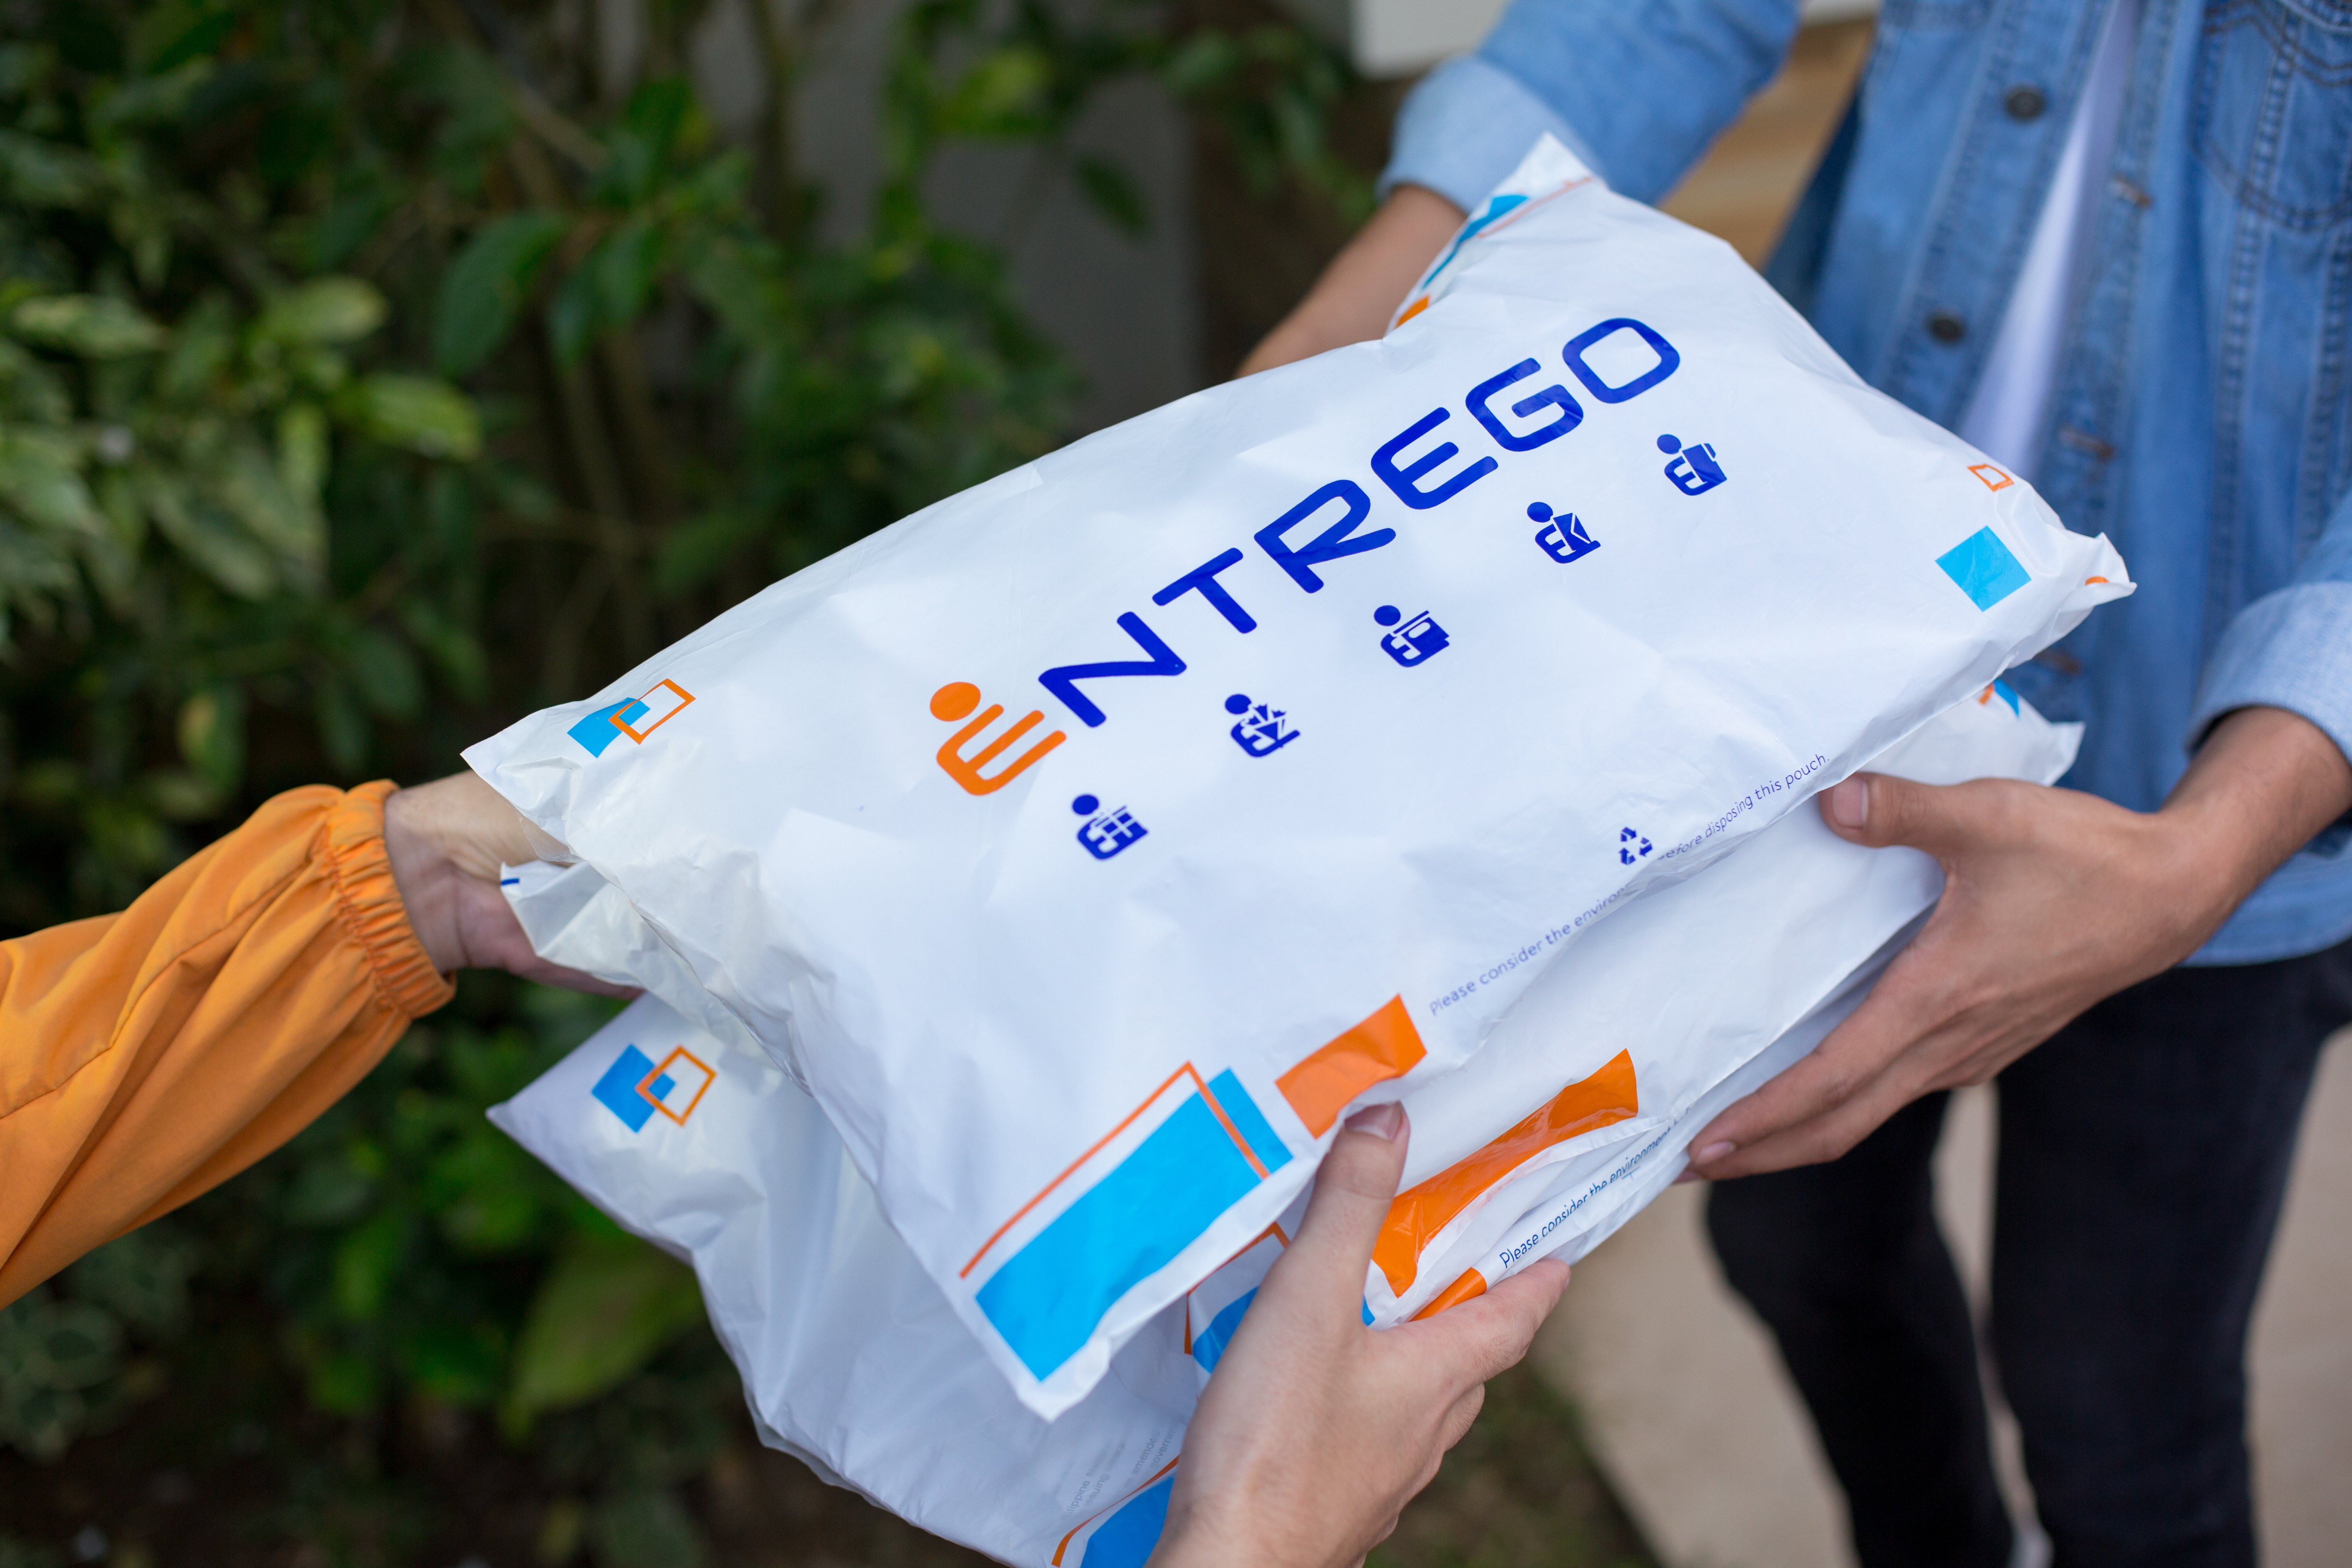 Rider handing Entrego parcel to recipient